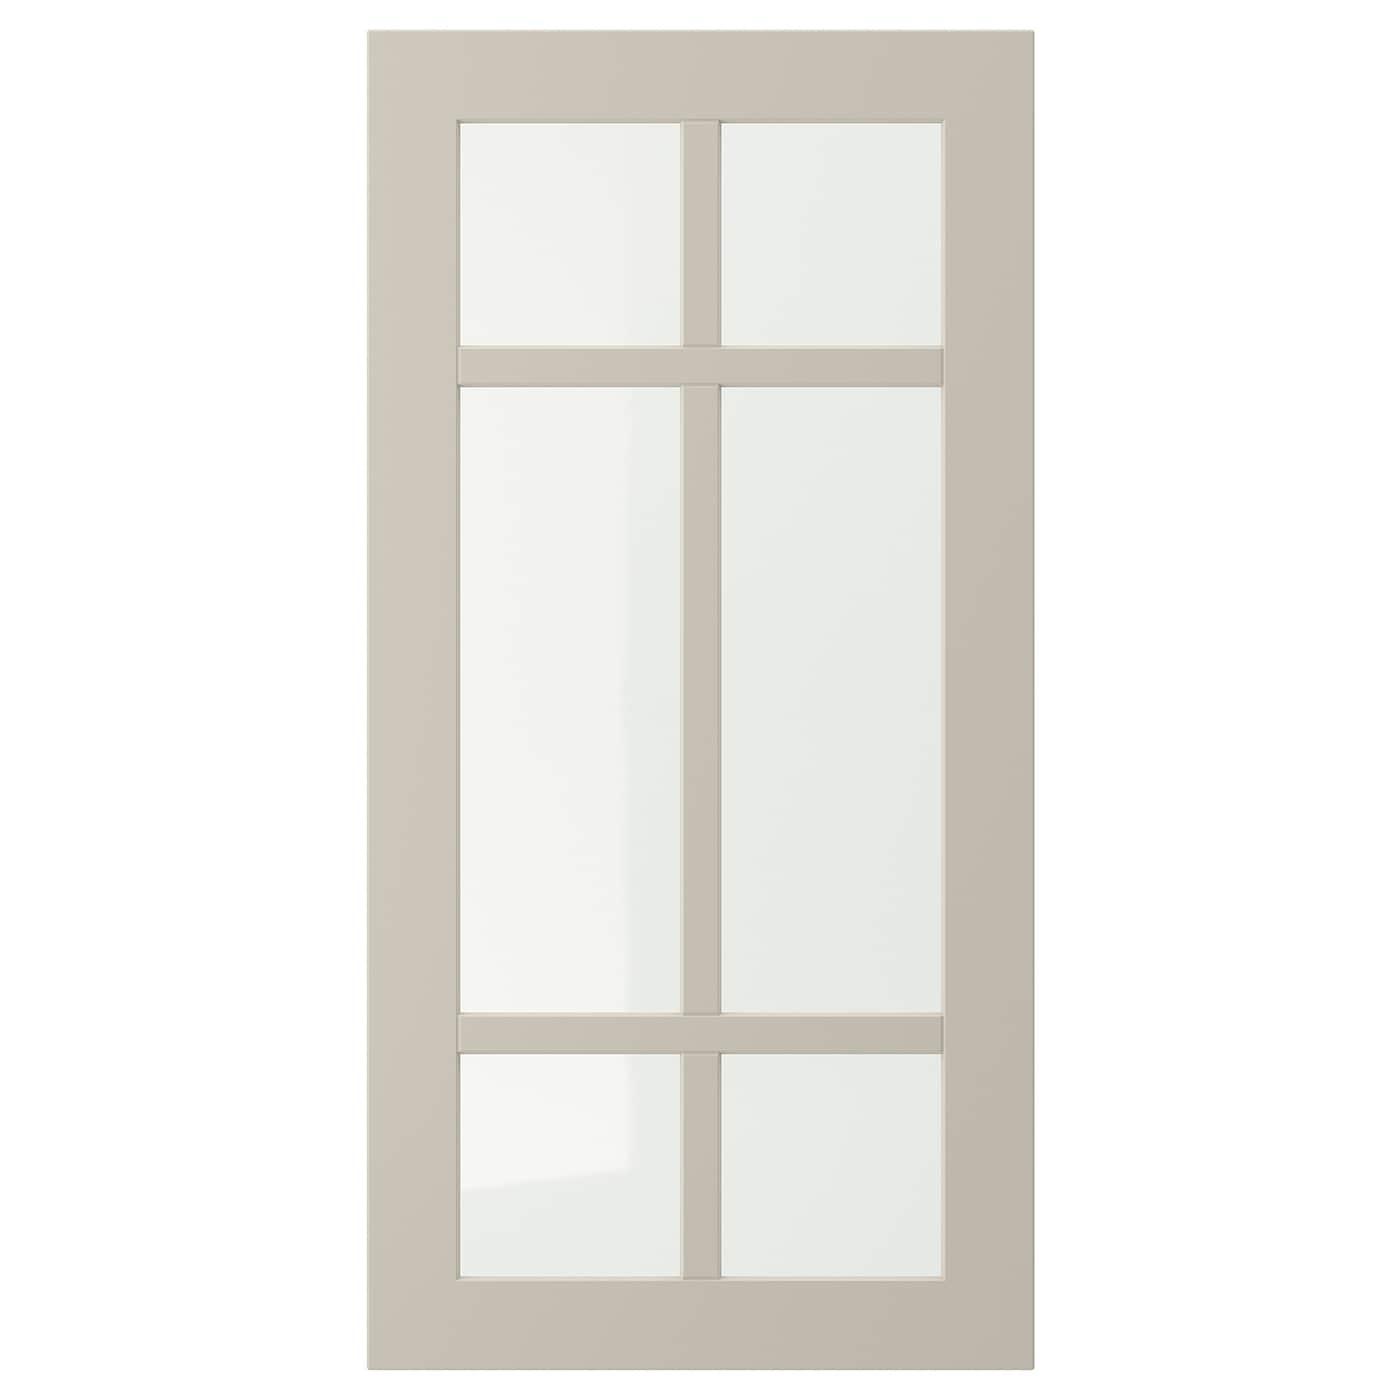 Дверца со стеклом - IKEA STENSUND, 80х40 см, бежевый, СТЕНСУНД ИКЕА